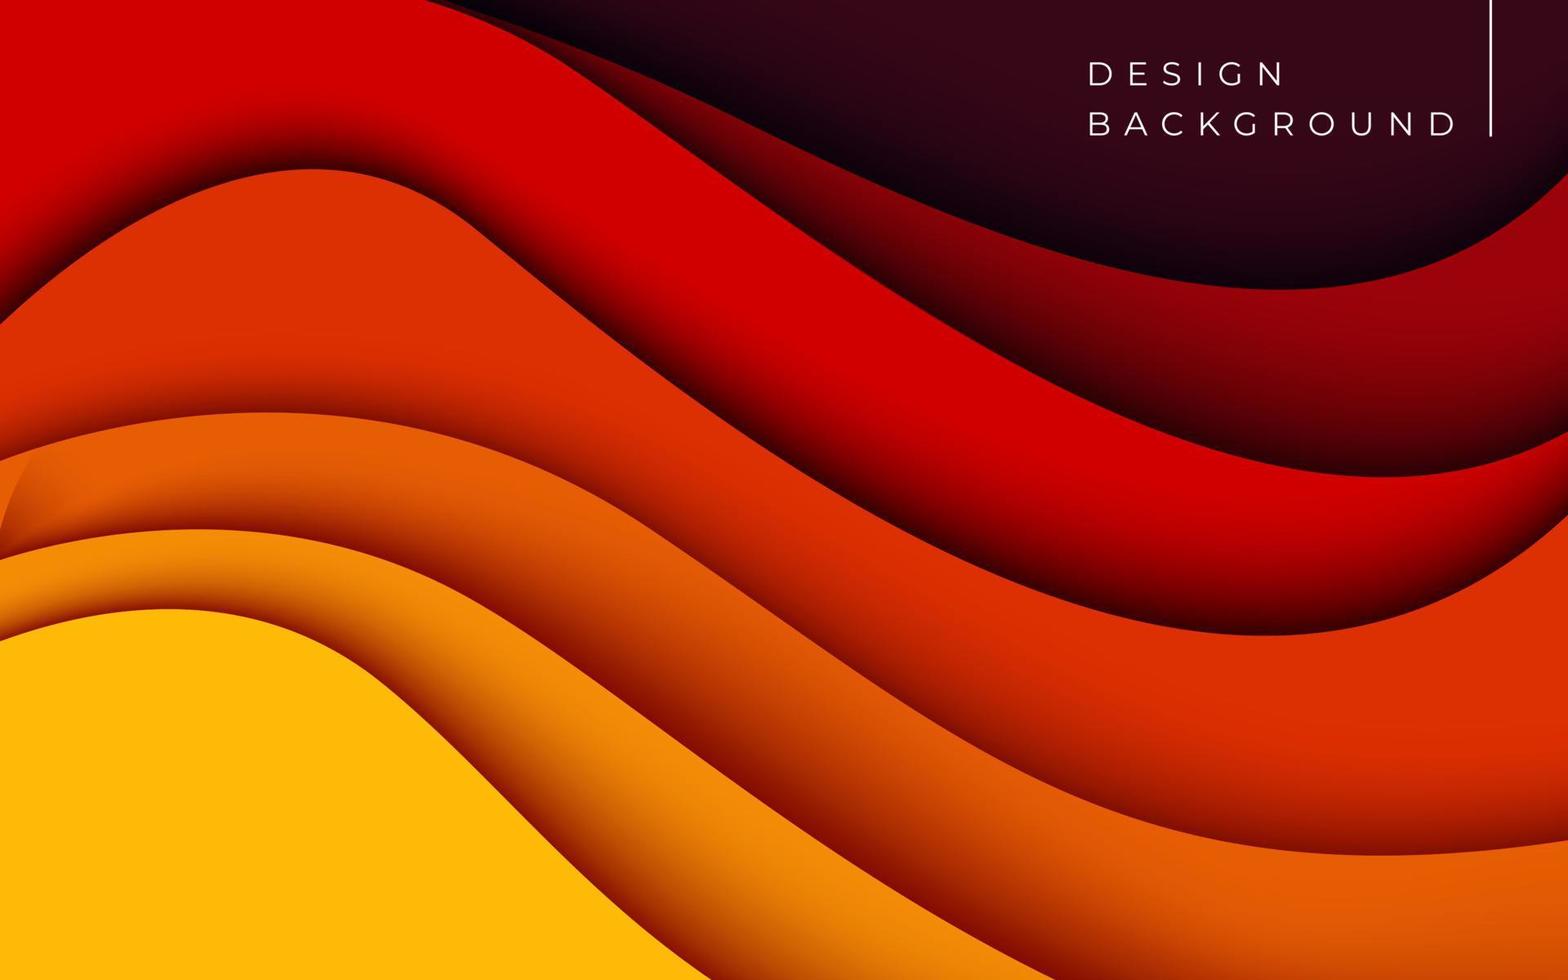 capas múltiples de textura de color rojo anaranjado capas de corte de papel 3d en banner de vector degradado. diseño de fondo de arte de corte de papel abstracto para plantilla de sitio web. concepto de mapa topográfico o corte de papel de origami suave